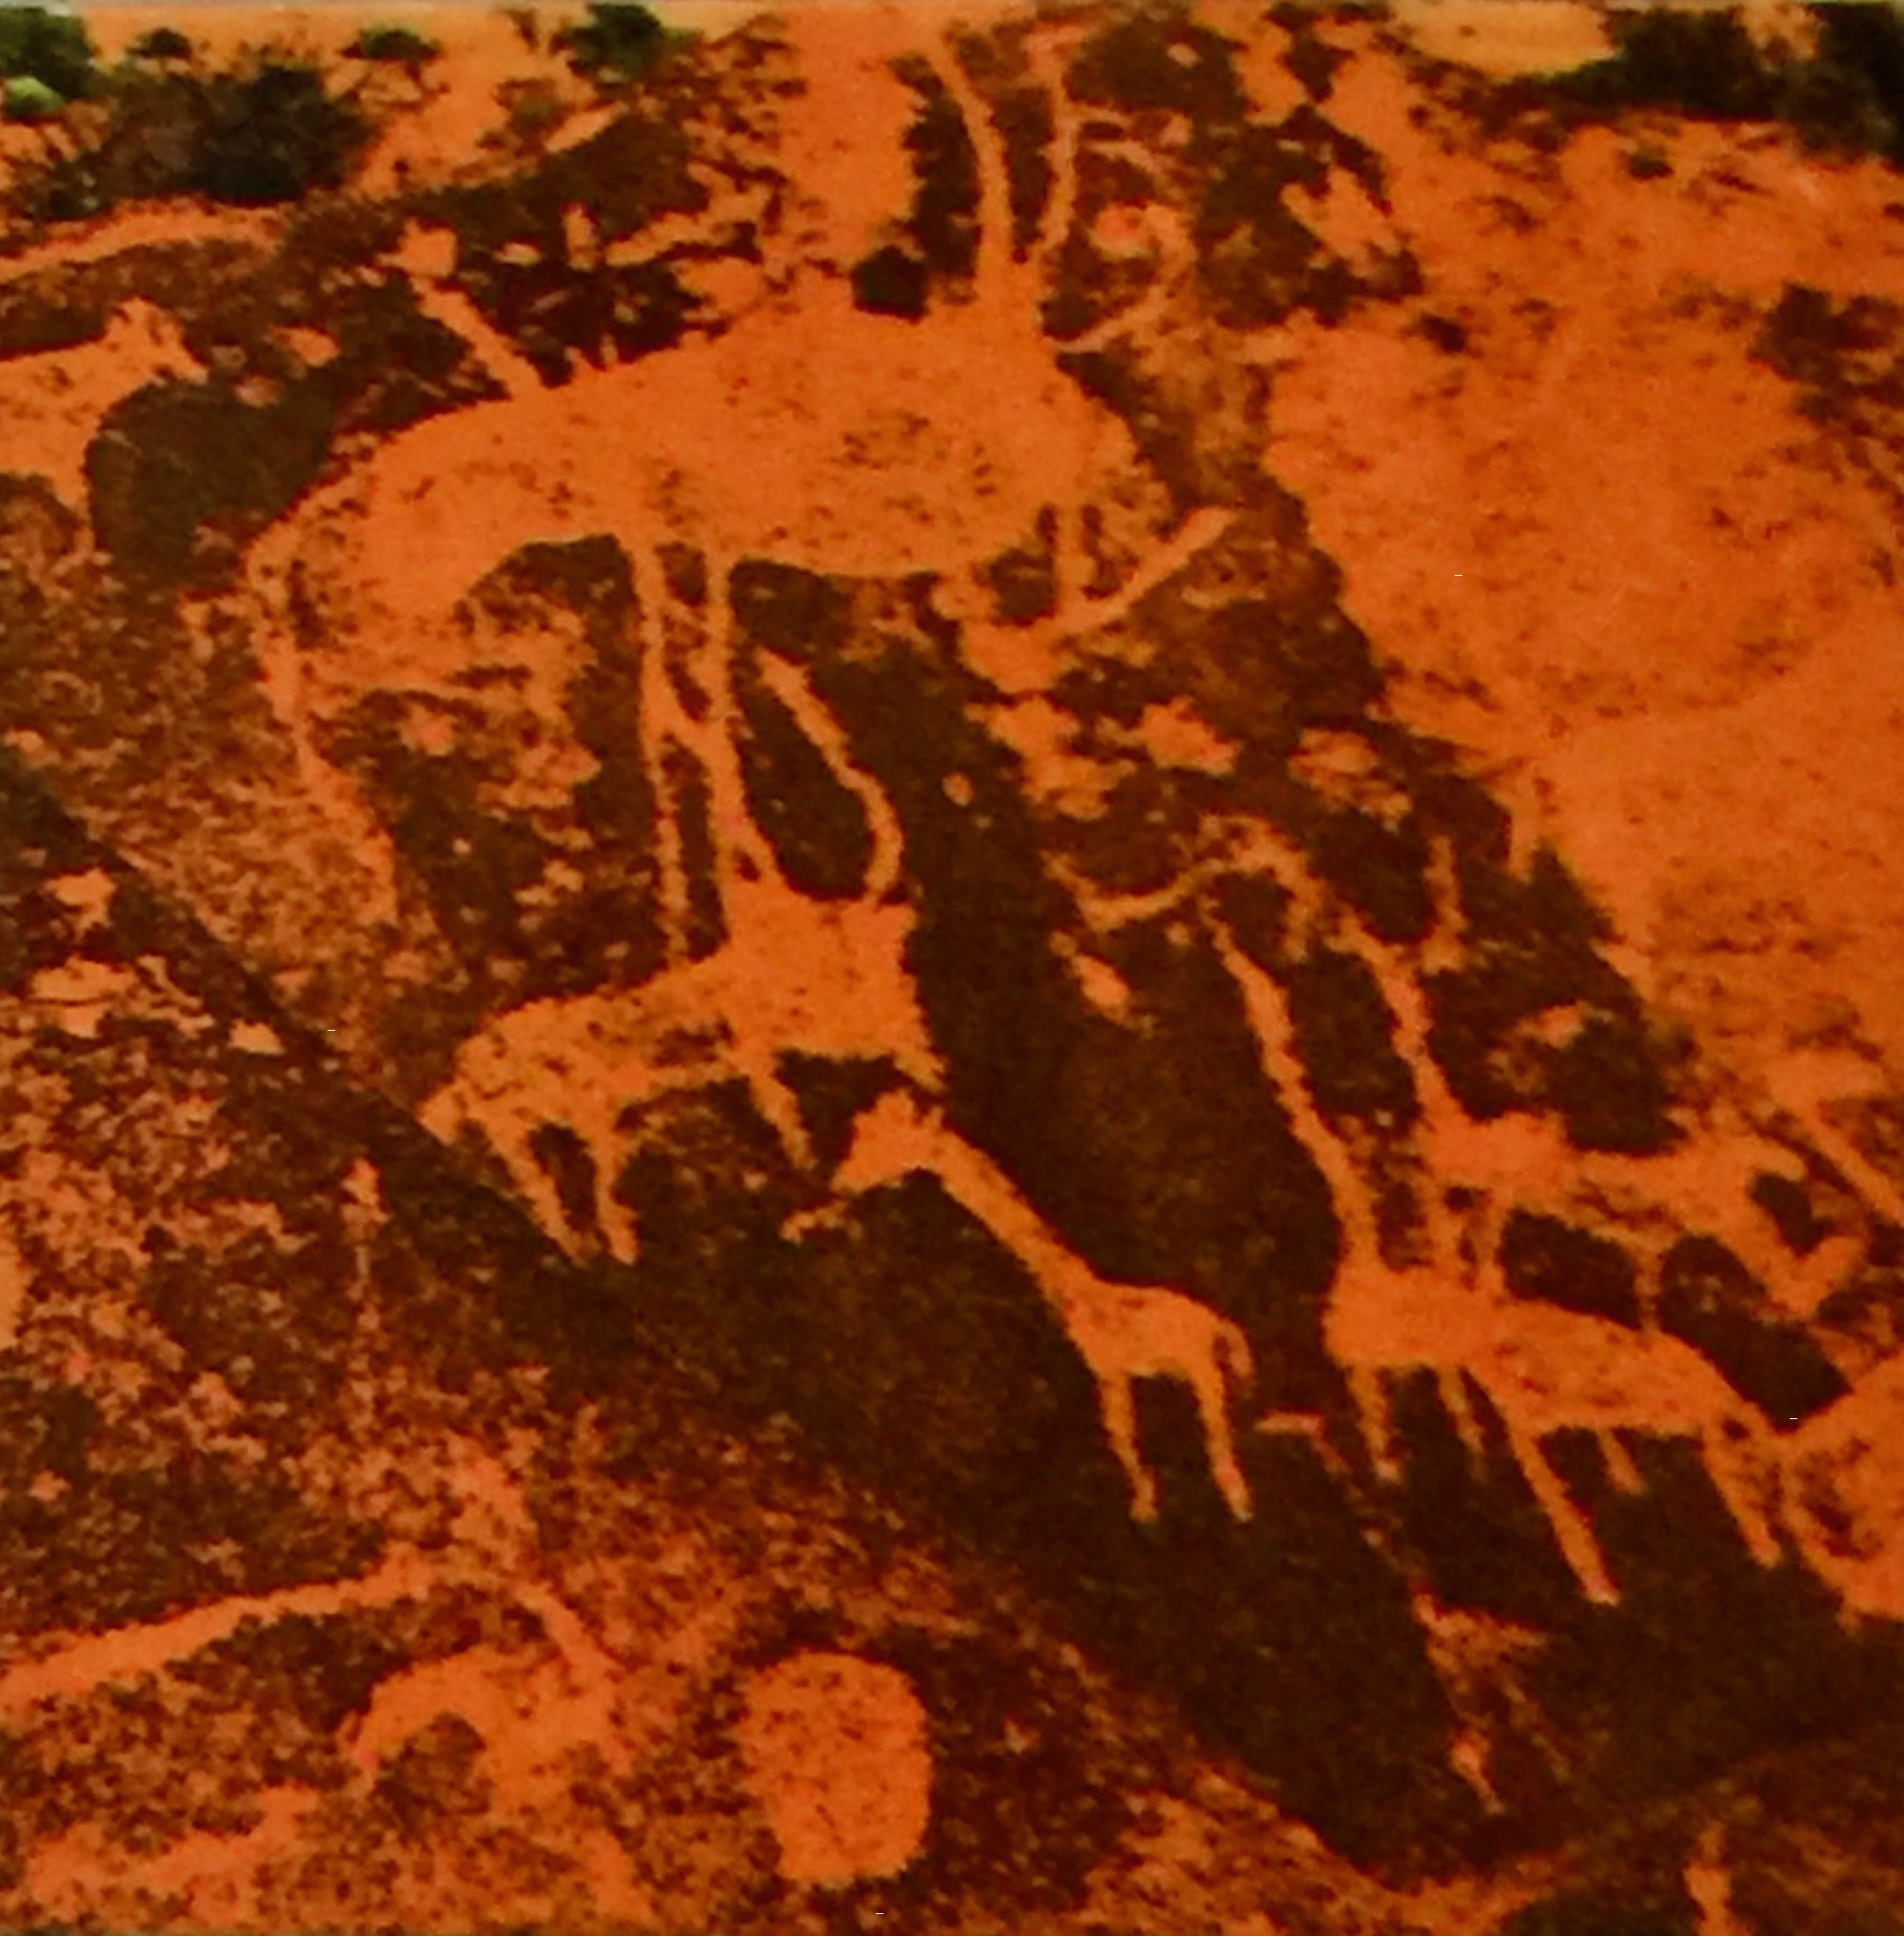 Twyfelfontein Petroglyph 6